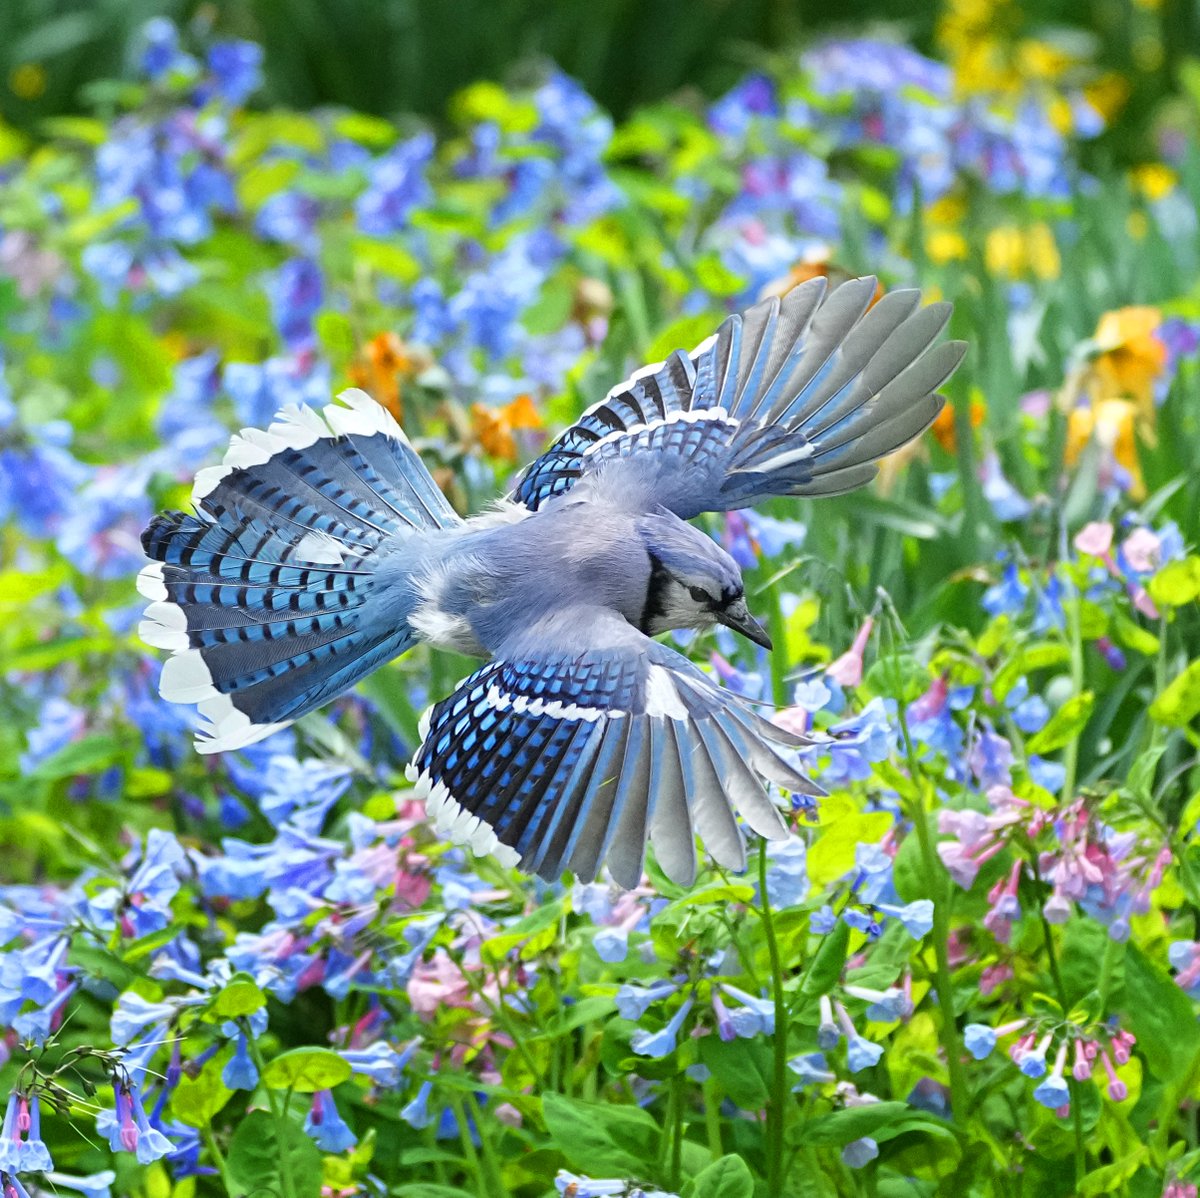 Virginia bluebells flowers and Blue Jay. Near greywacke arch, Central park. #birdcpp #birdsinflight #flowers #bluejay @BirdCentralpark